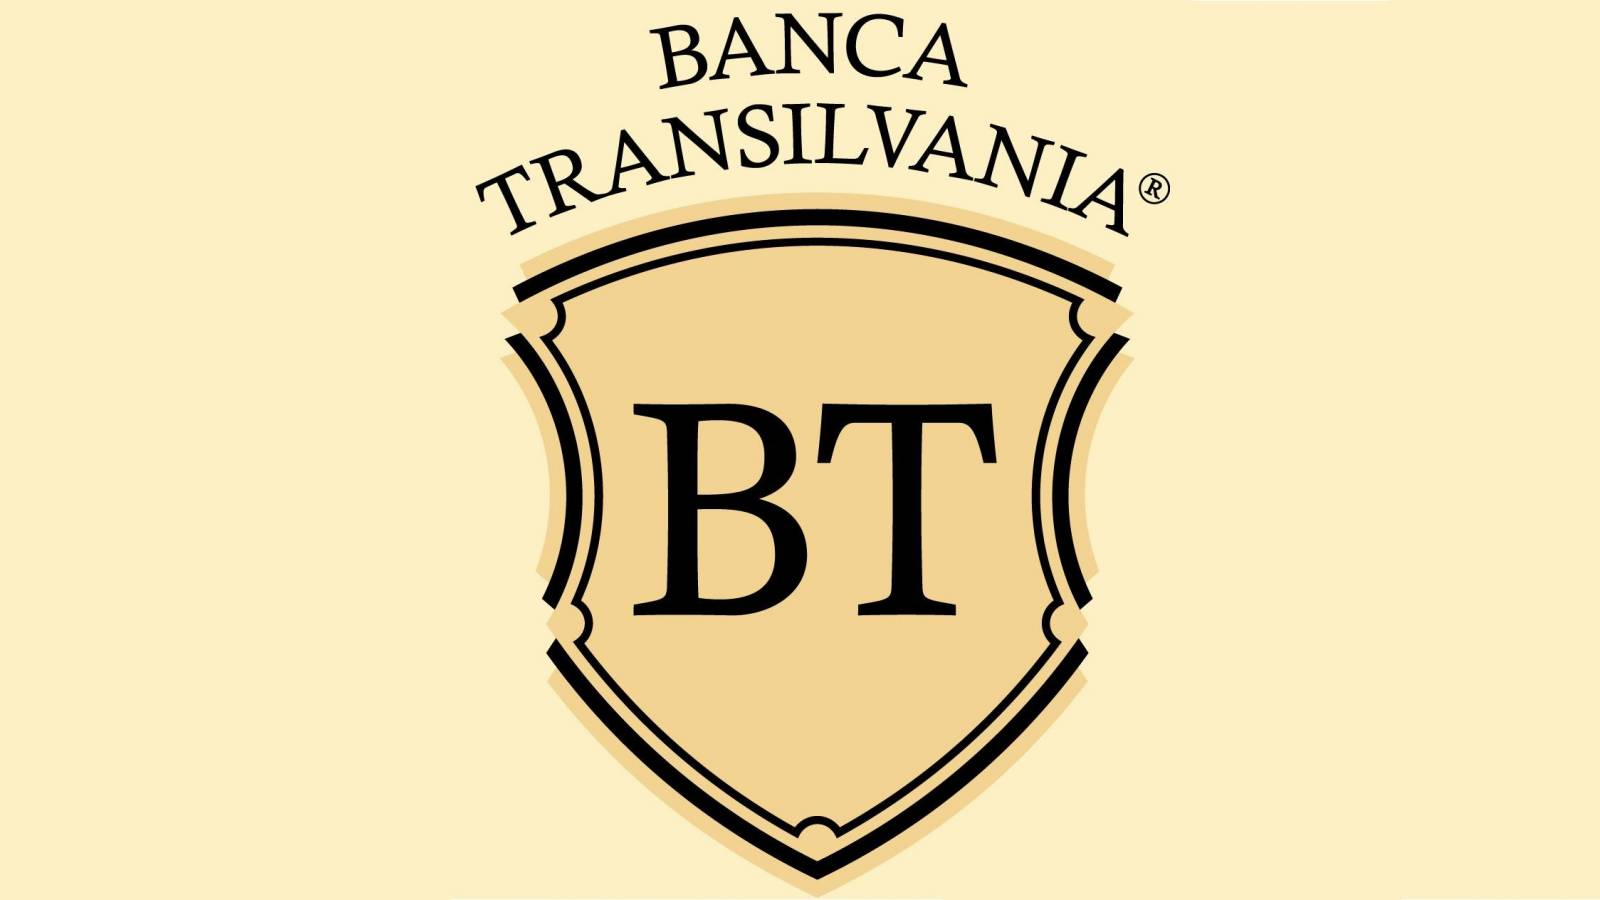 BANCA Transilvania shares